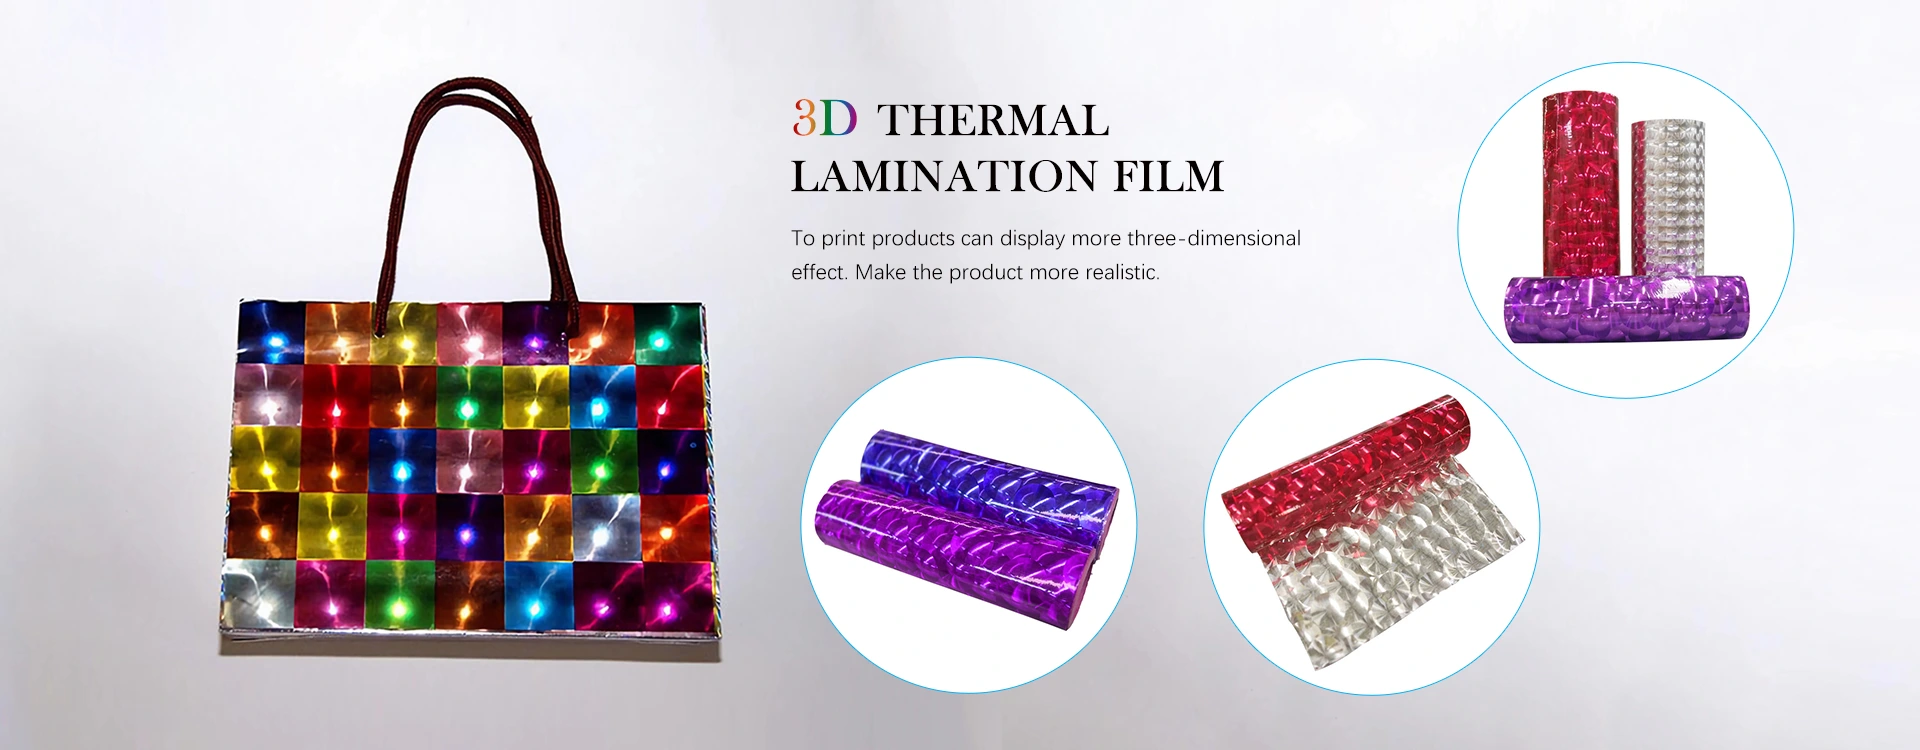 Производители на 3D термички ламинирачки филмови